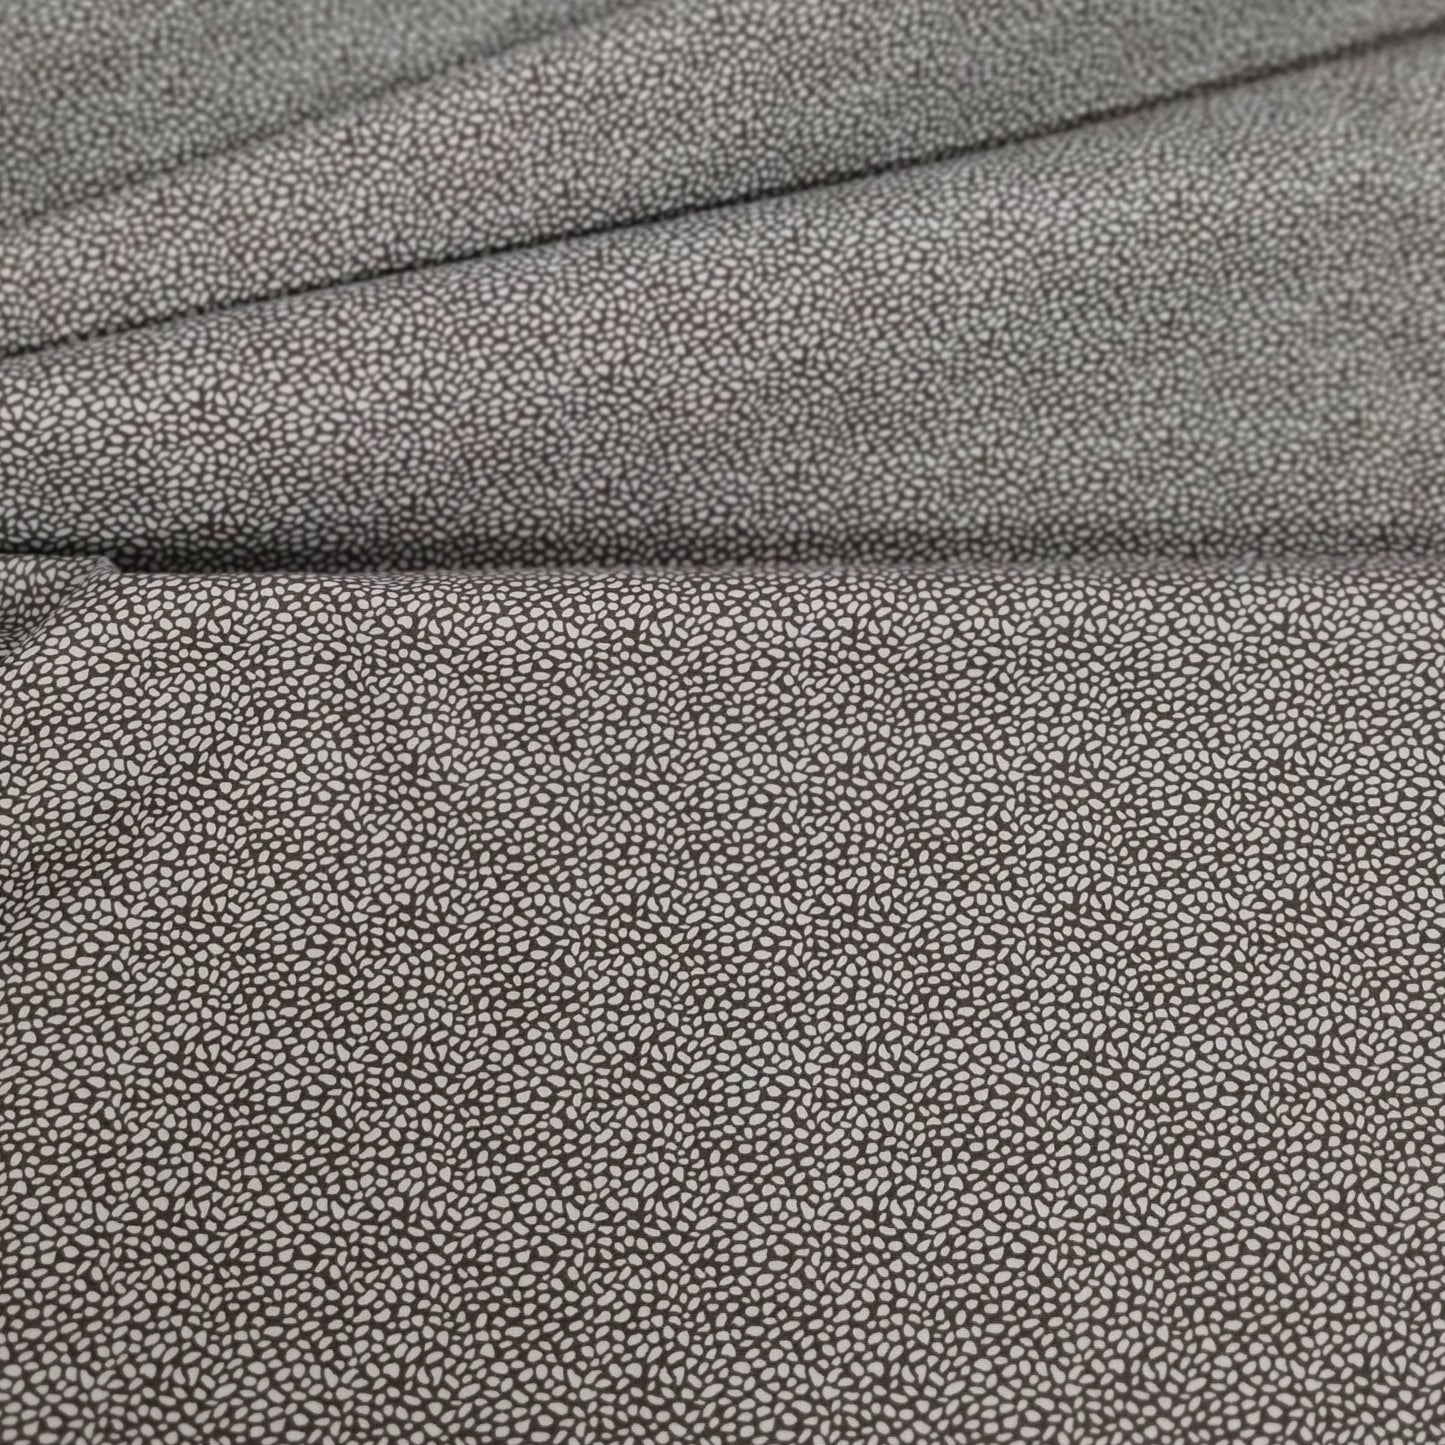 Baumwolldruck mit kleinem Muster